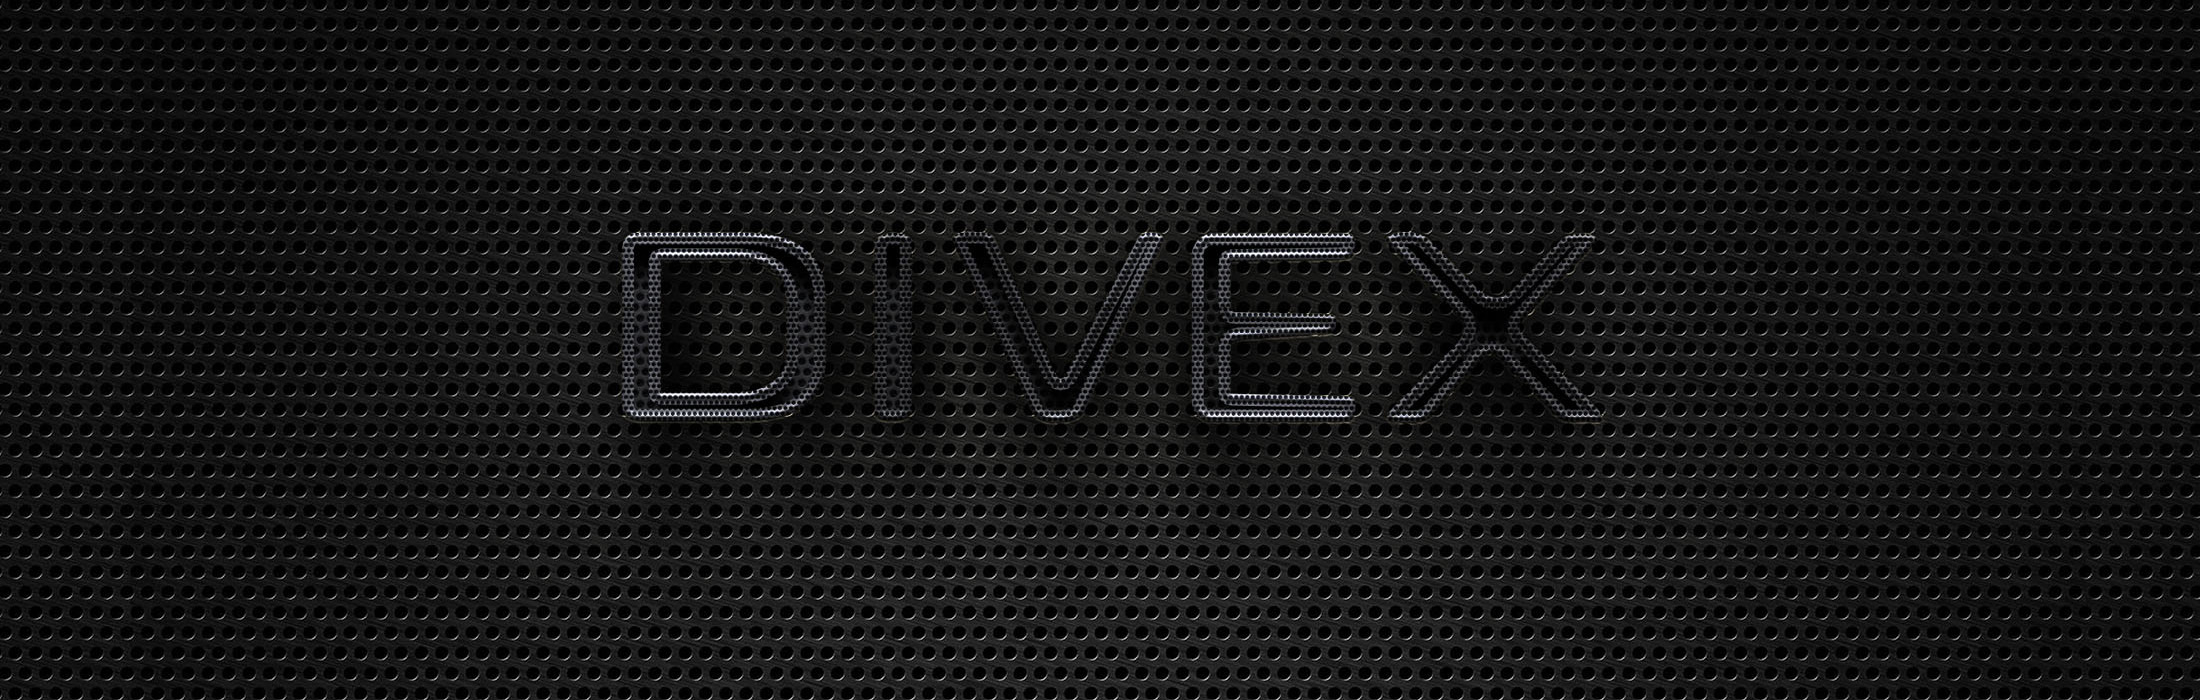 solid_Divex_3